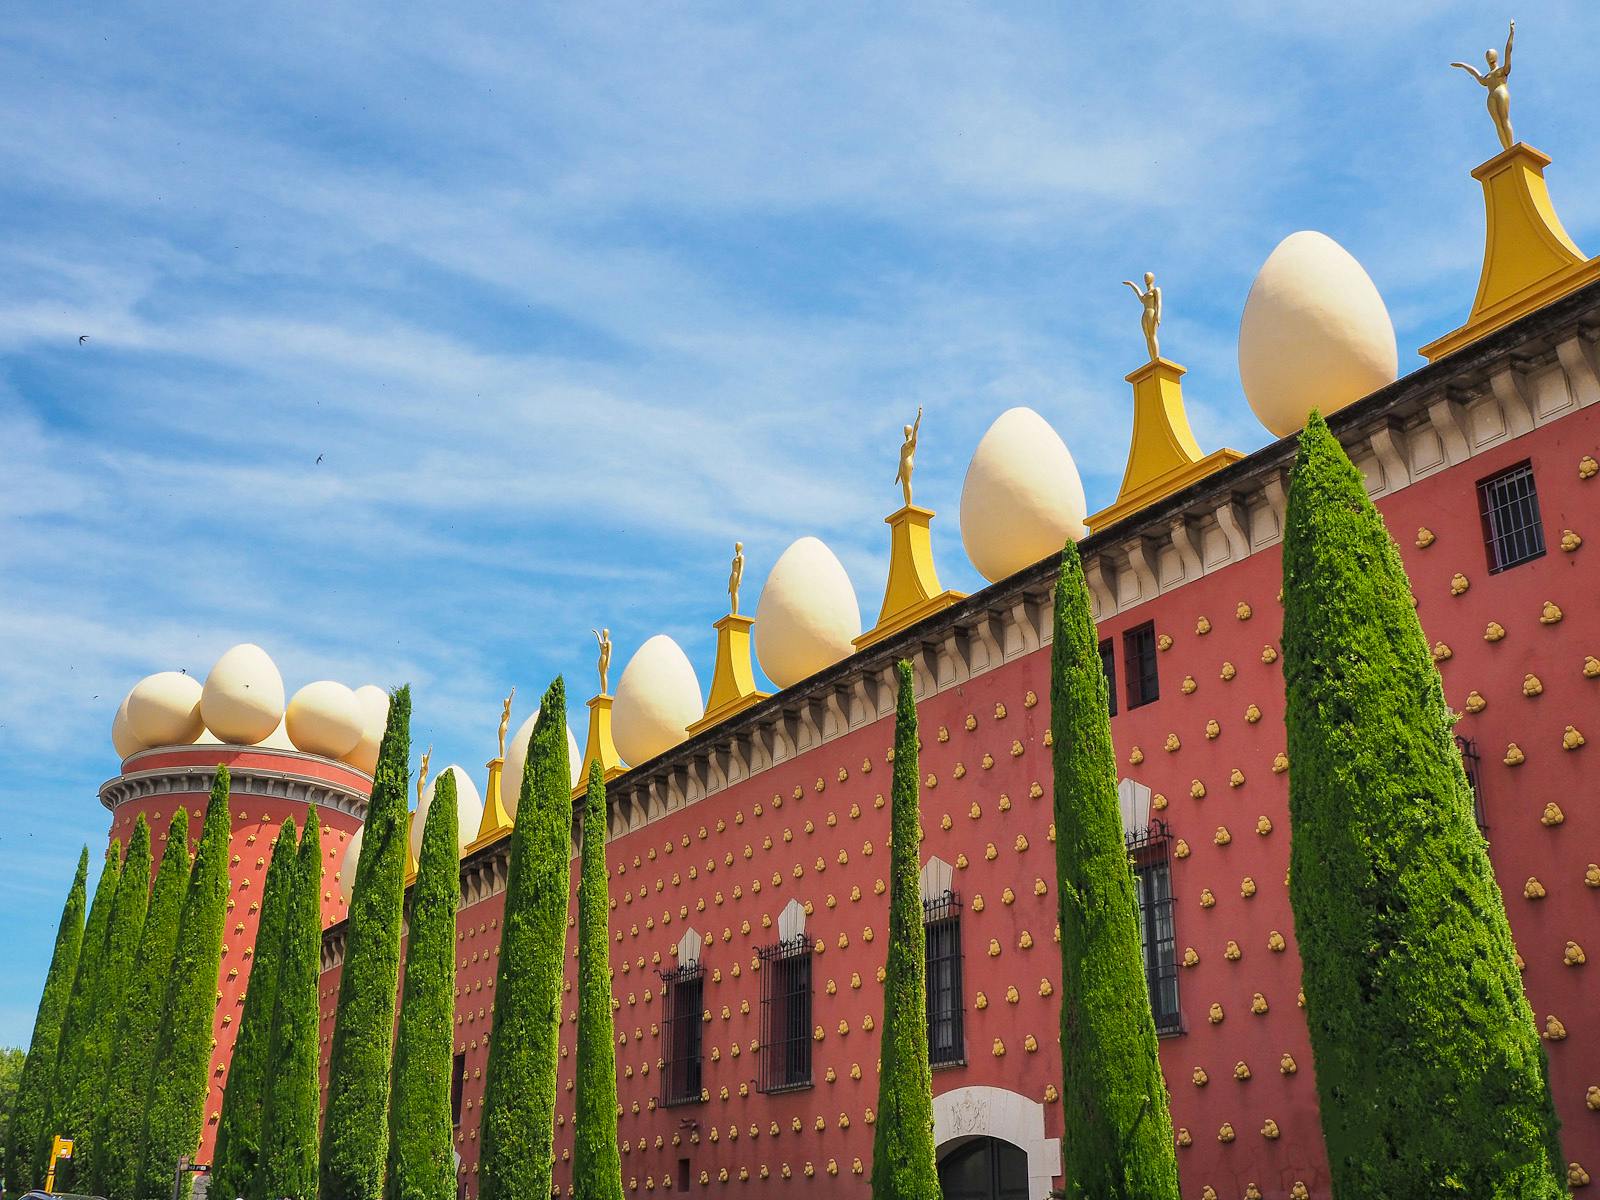 De dagtrip naar de Dalí-driehoek en Cadaques vanuit Girona